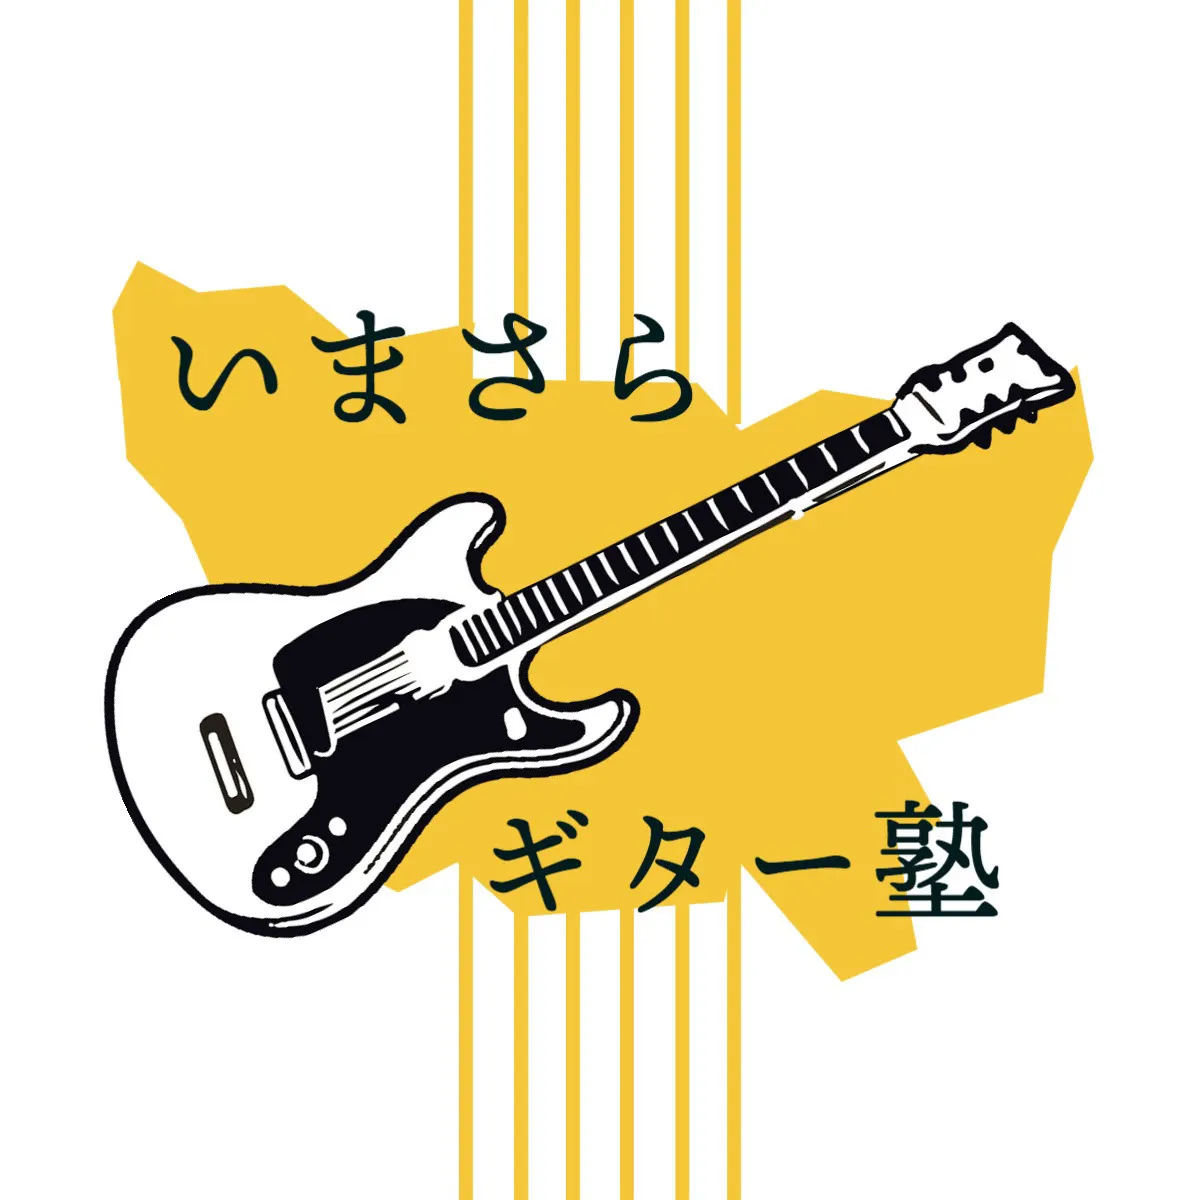 White guitar youtube logo